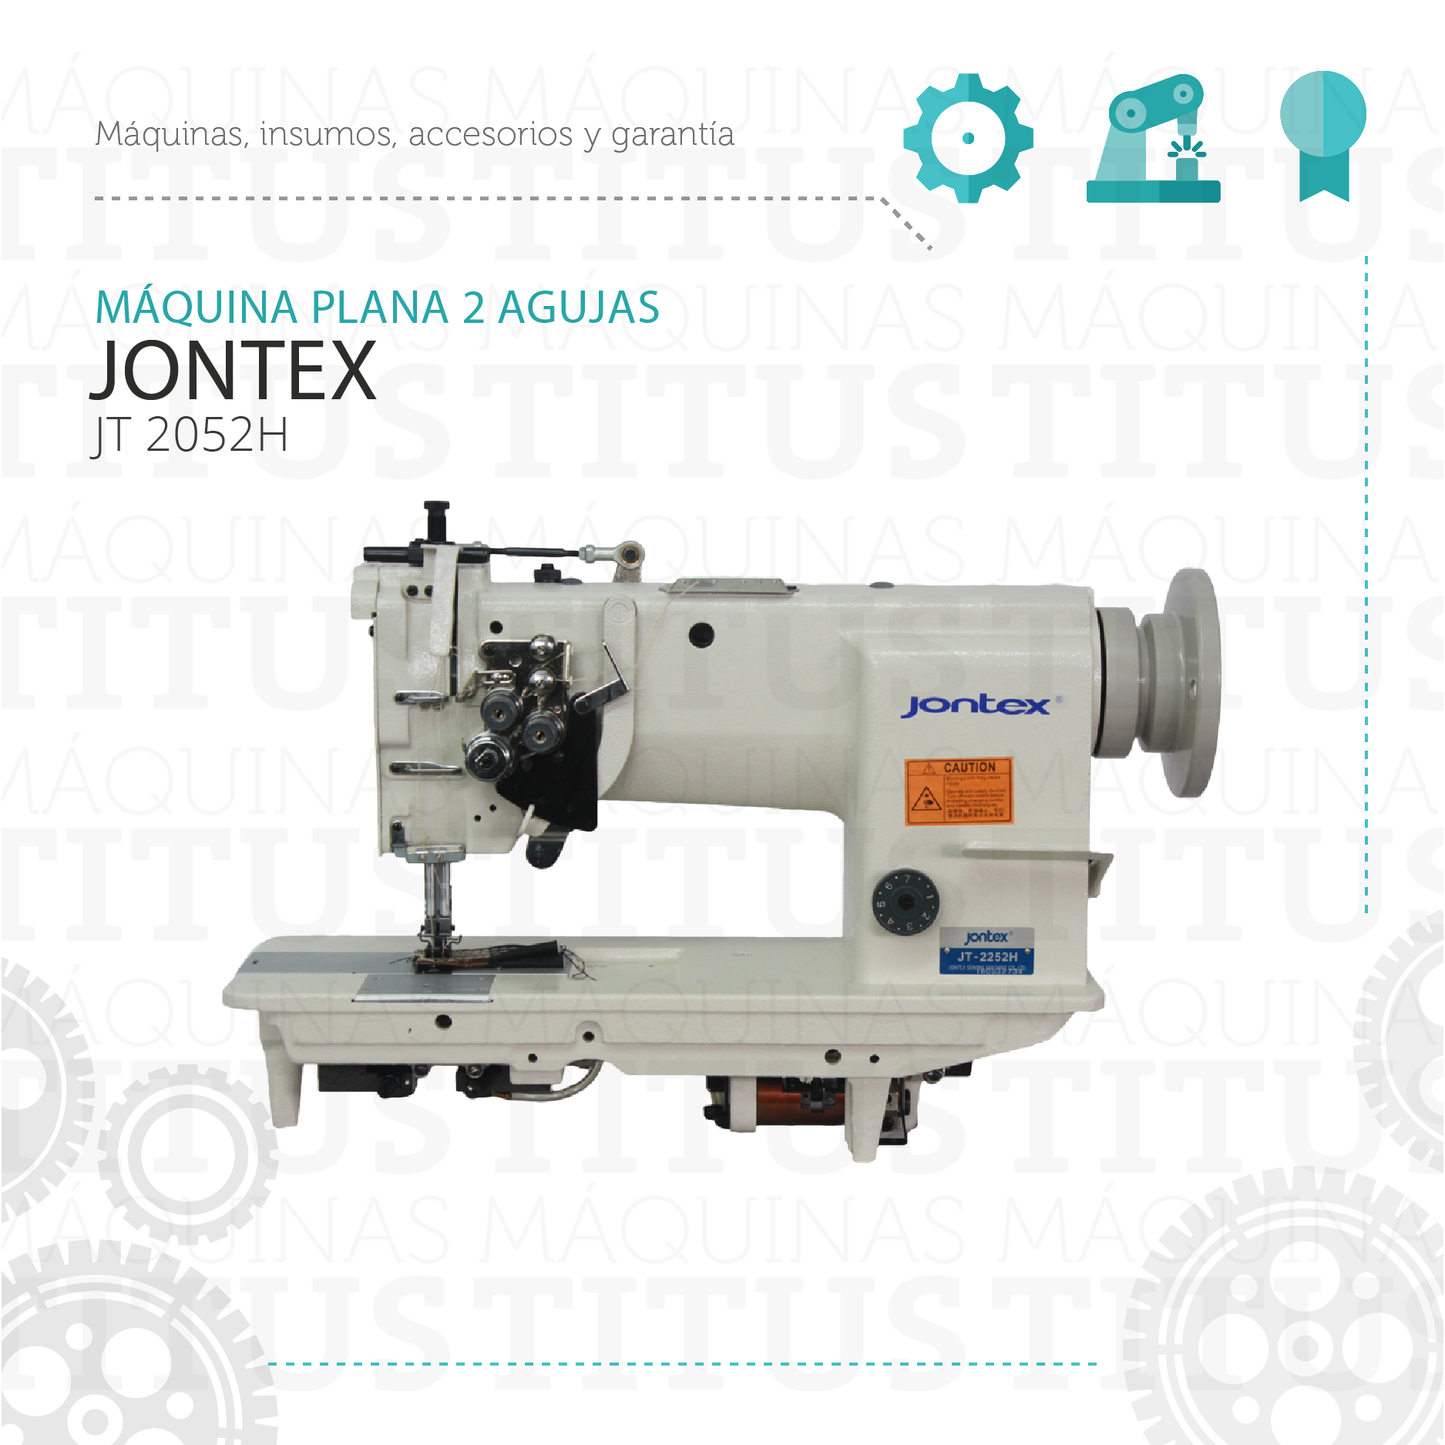 Plana Dos Agujas Jontex Jt 2052HE Maquina De Coser - Commercio